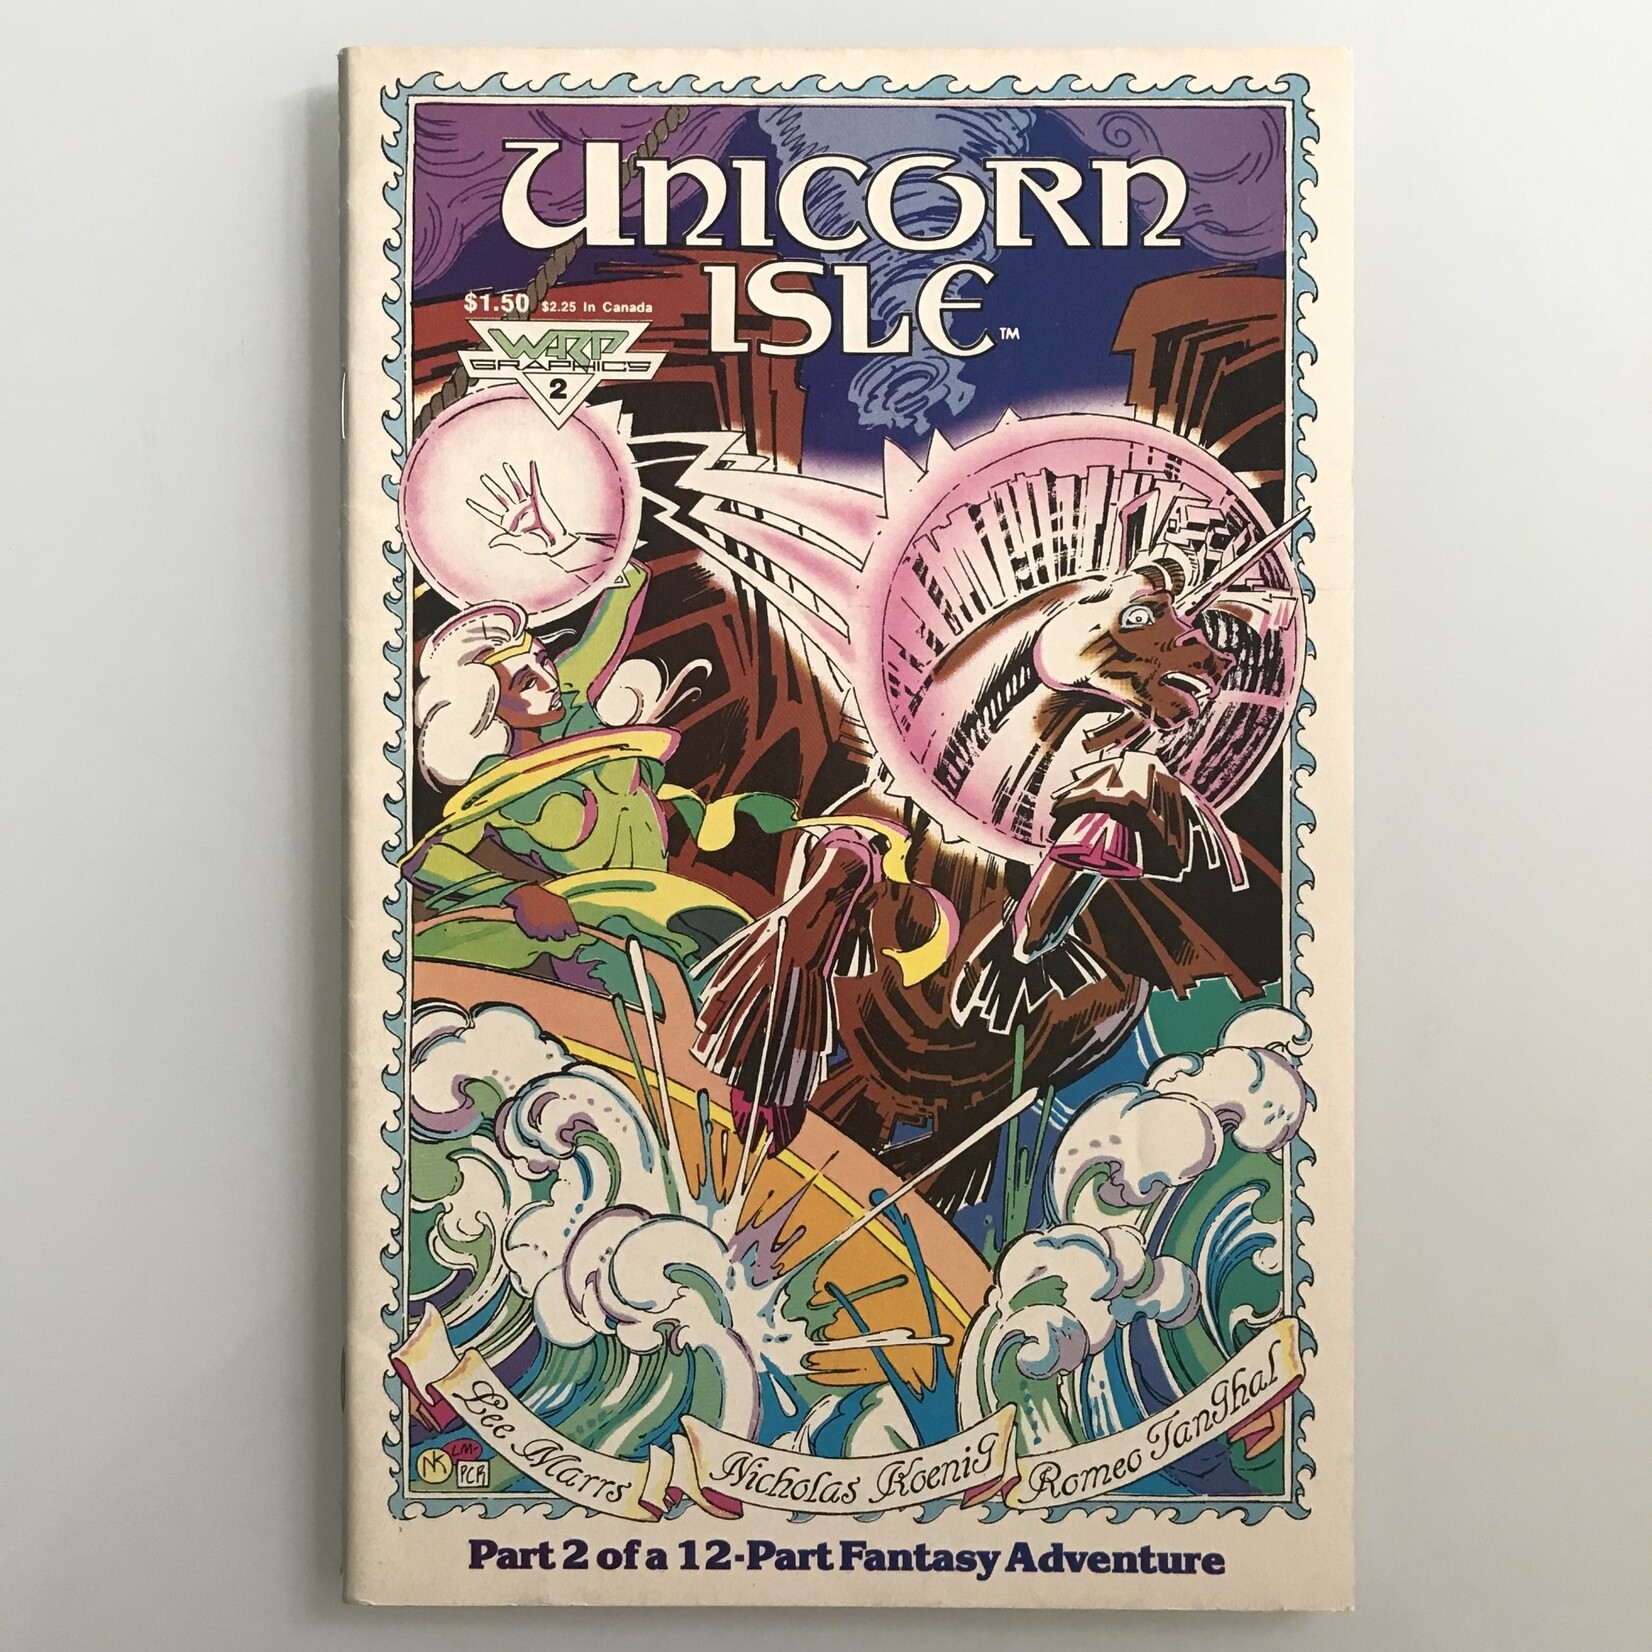 Unicorn Isle - Vol. 1 #02 November 1986 - Comic Book